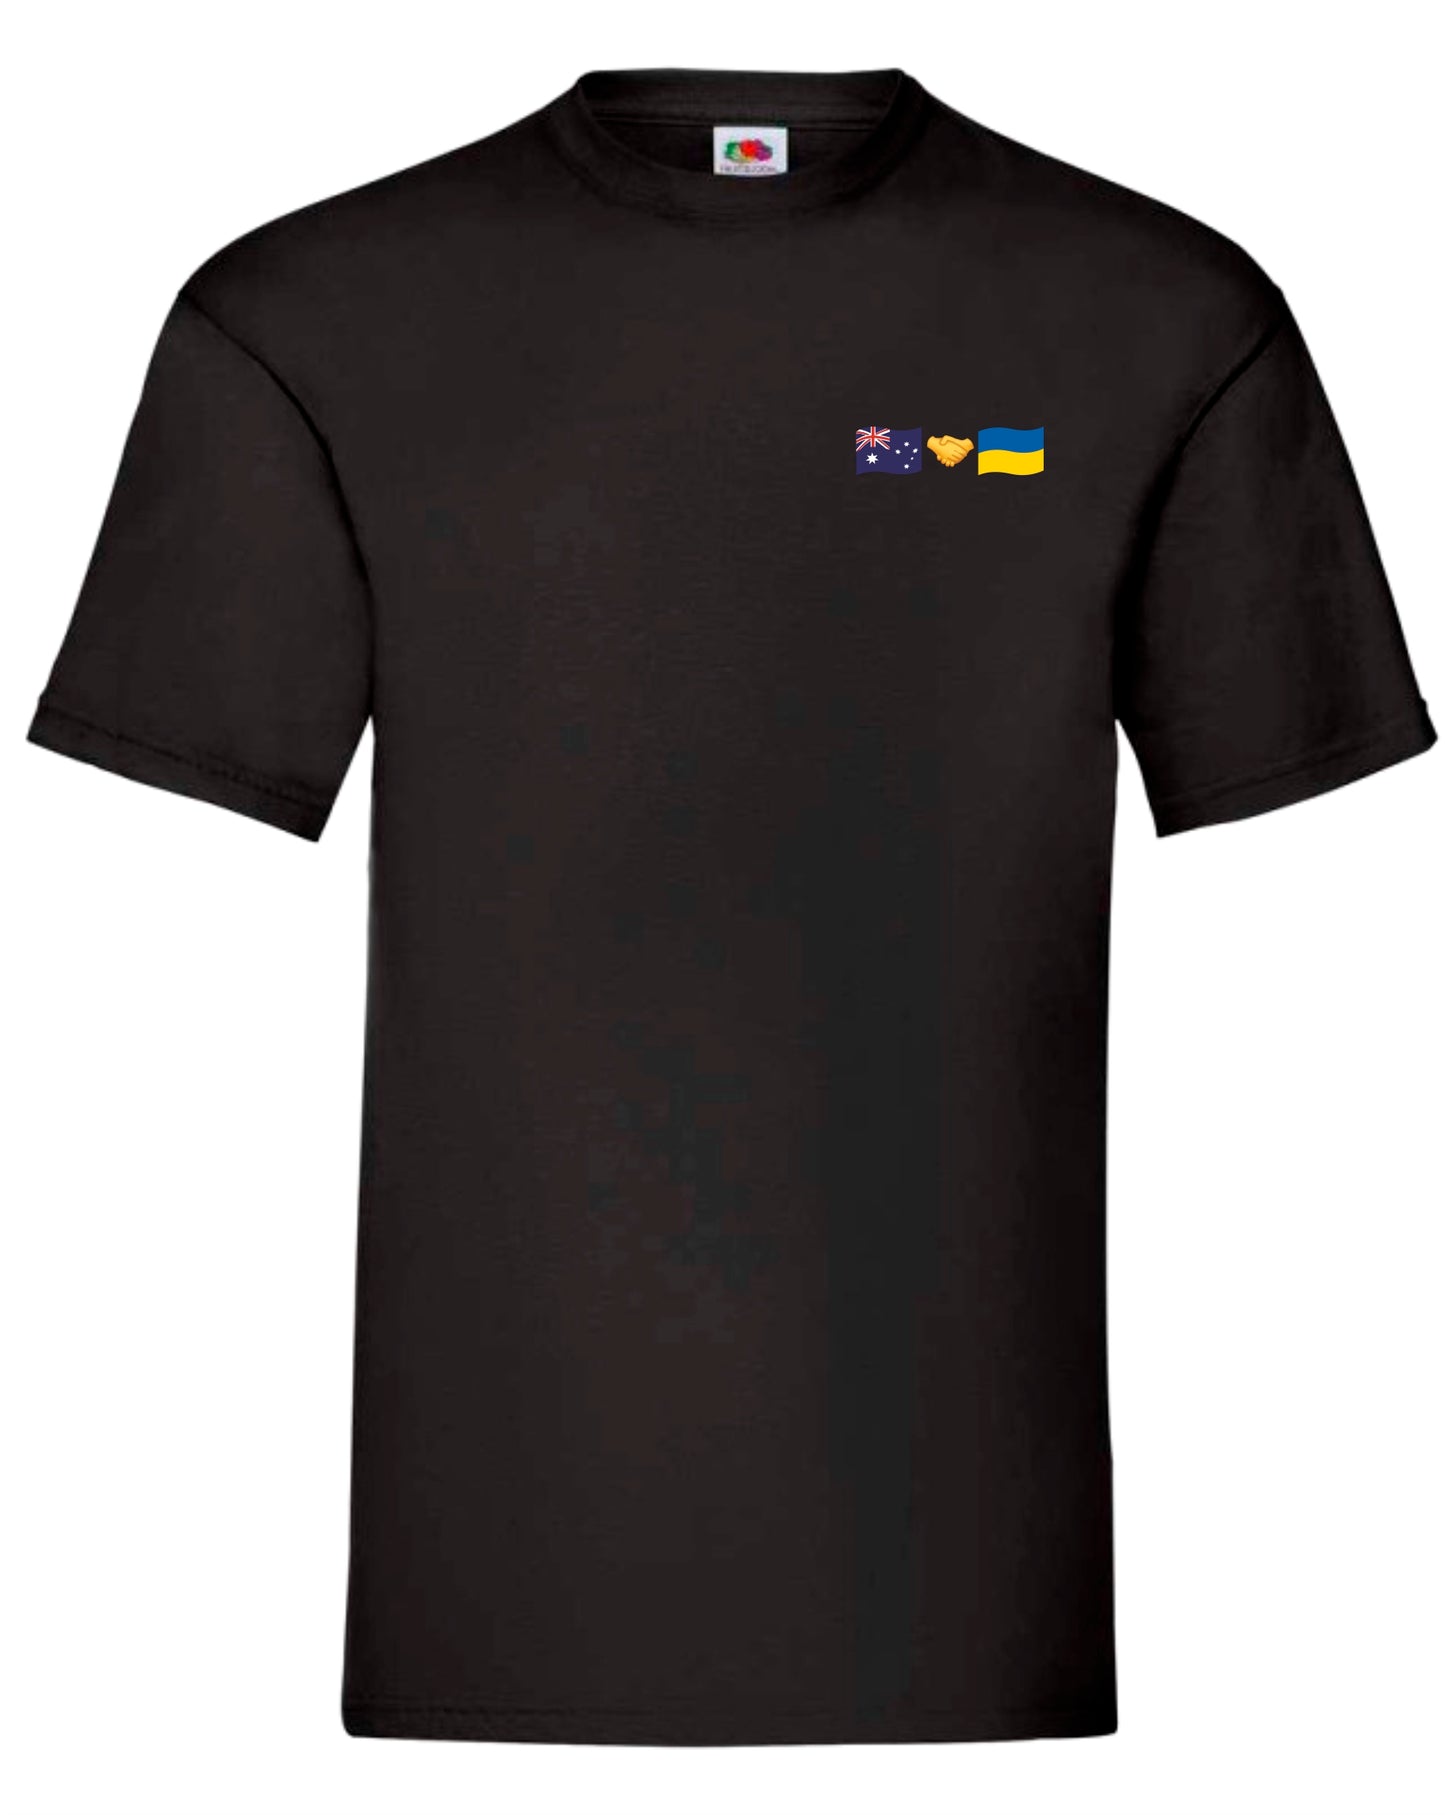 T-shirt Australia + Ukraine (small logo)